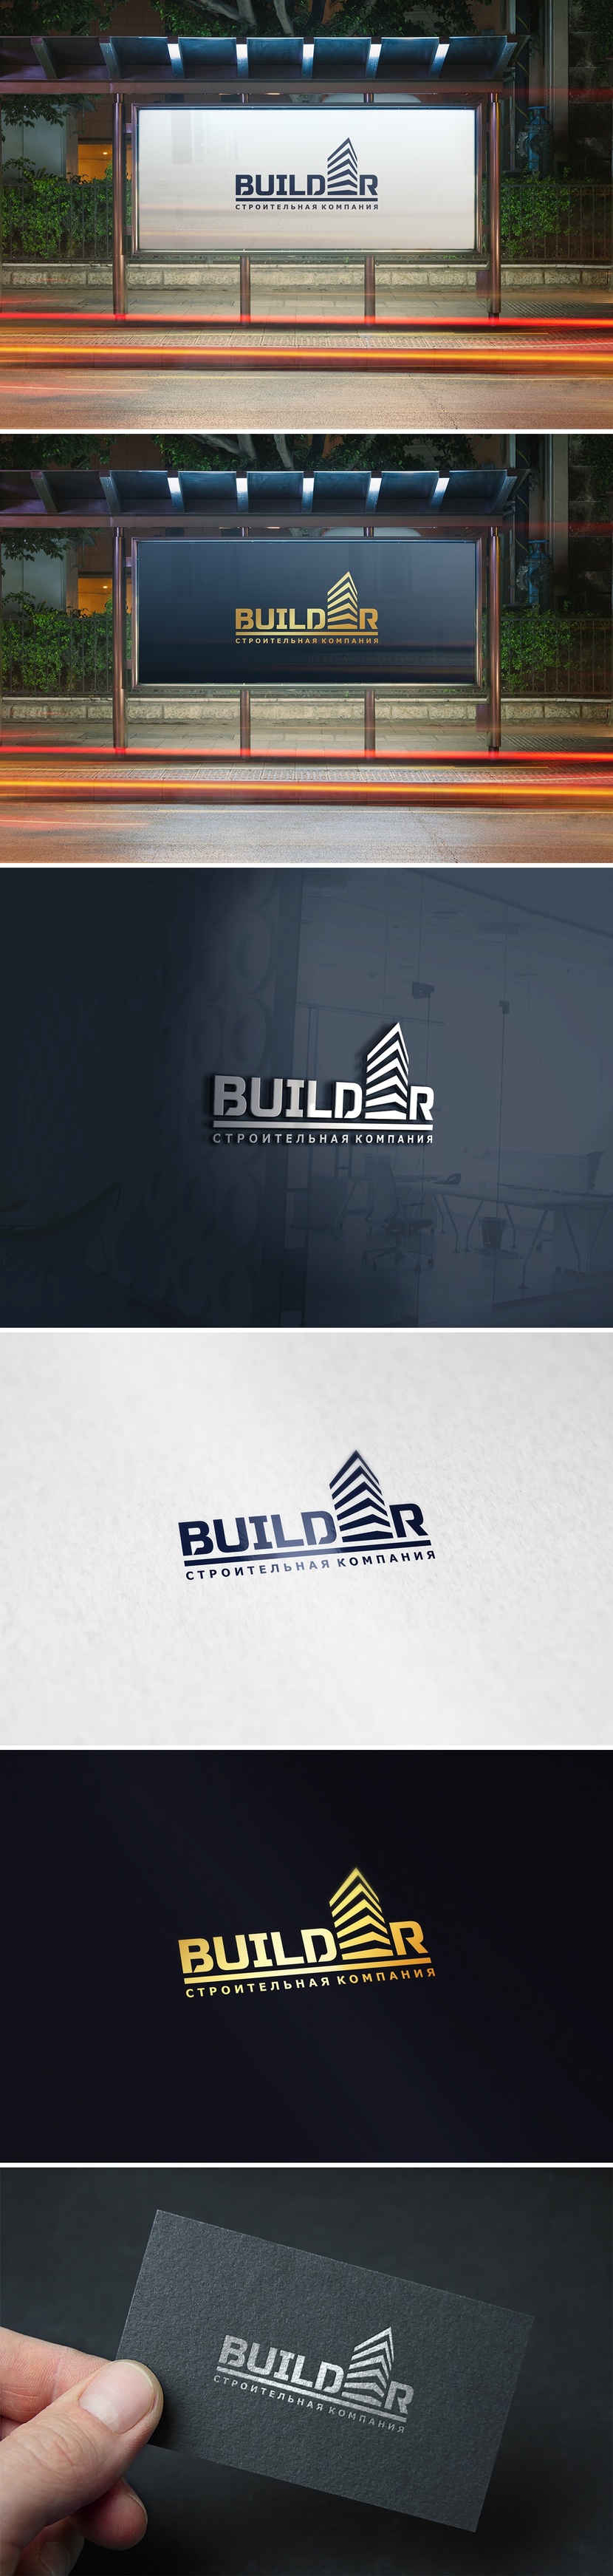 BUILDER - Логотип и фирменный стиль для строительной компании